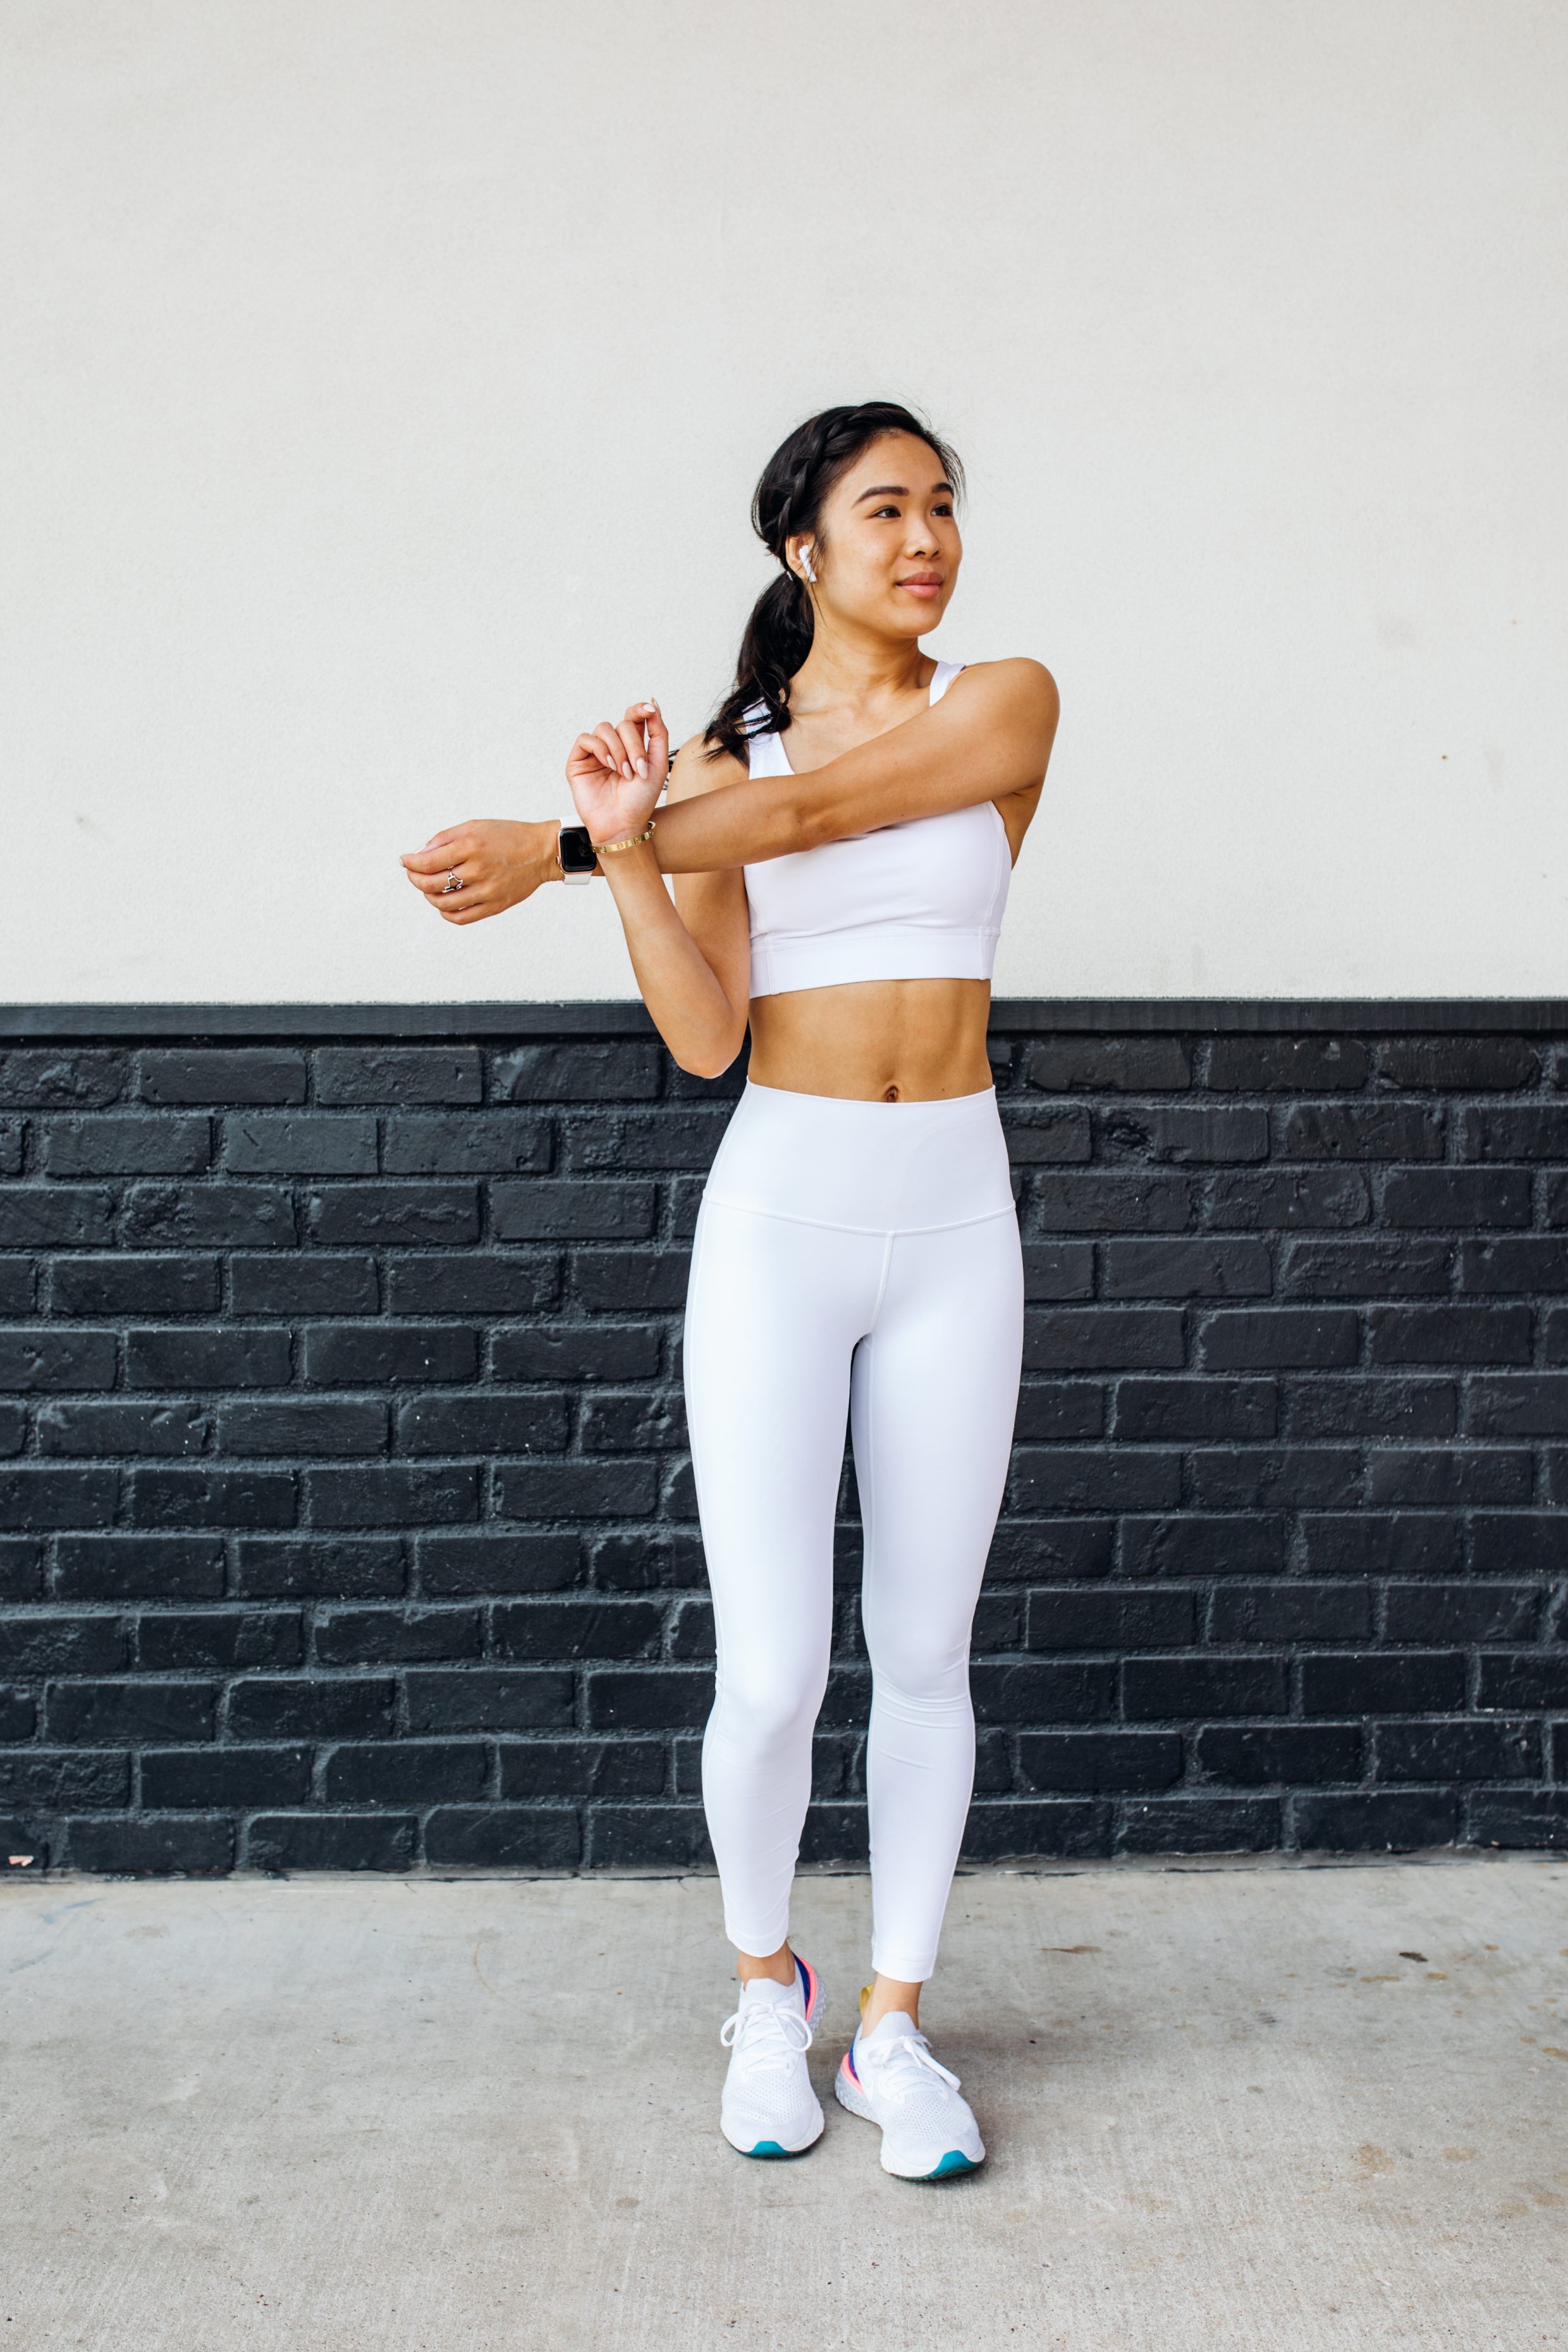 Blogger Hoang-Kim shares wearing lululemon energy bra and high-waist leggings